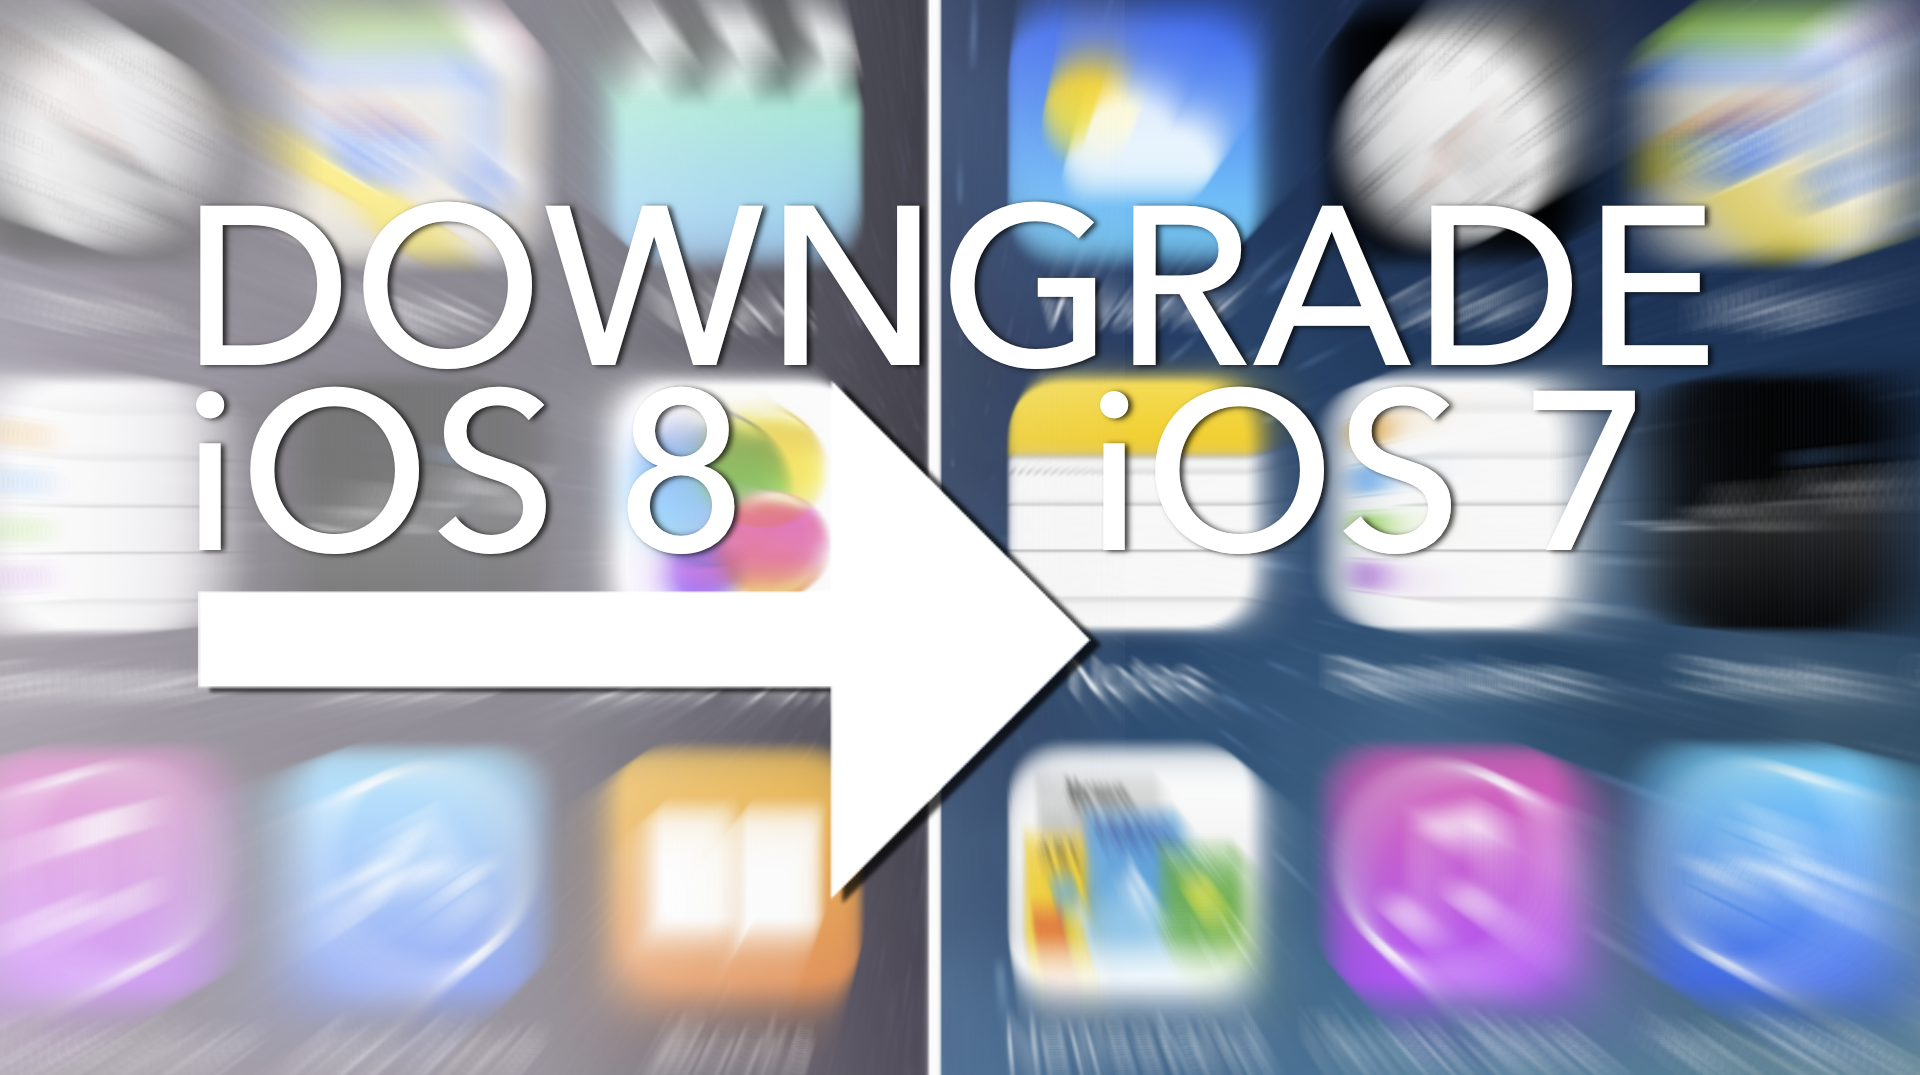 Ya no se puede realizar downgrade a iOS 7.1.2.